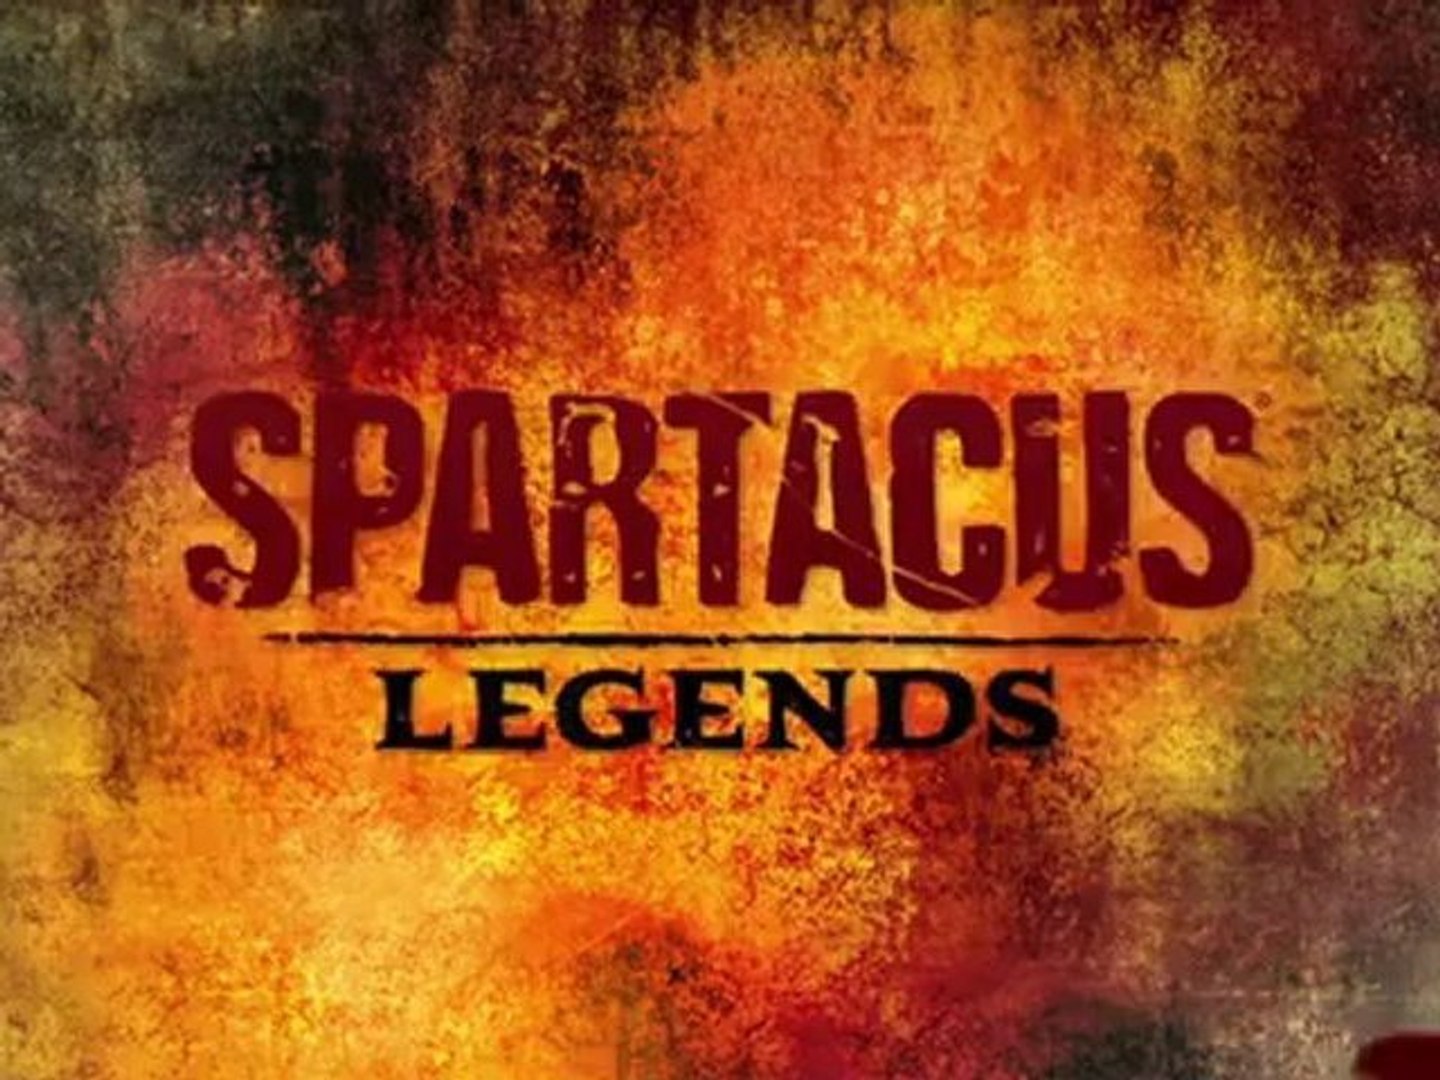 Trailers: Spartacus: Legends - Announcement Trailer